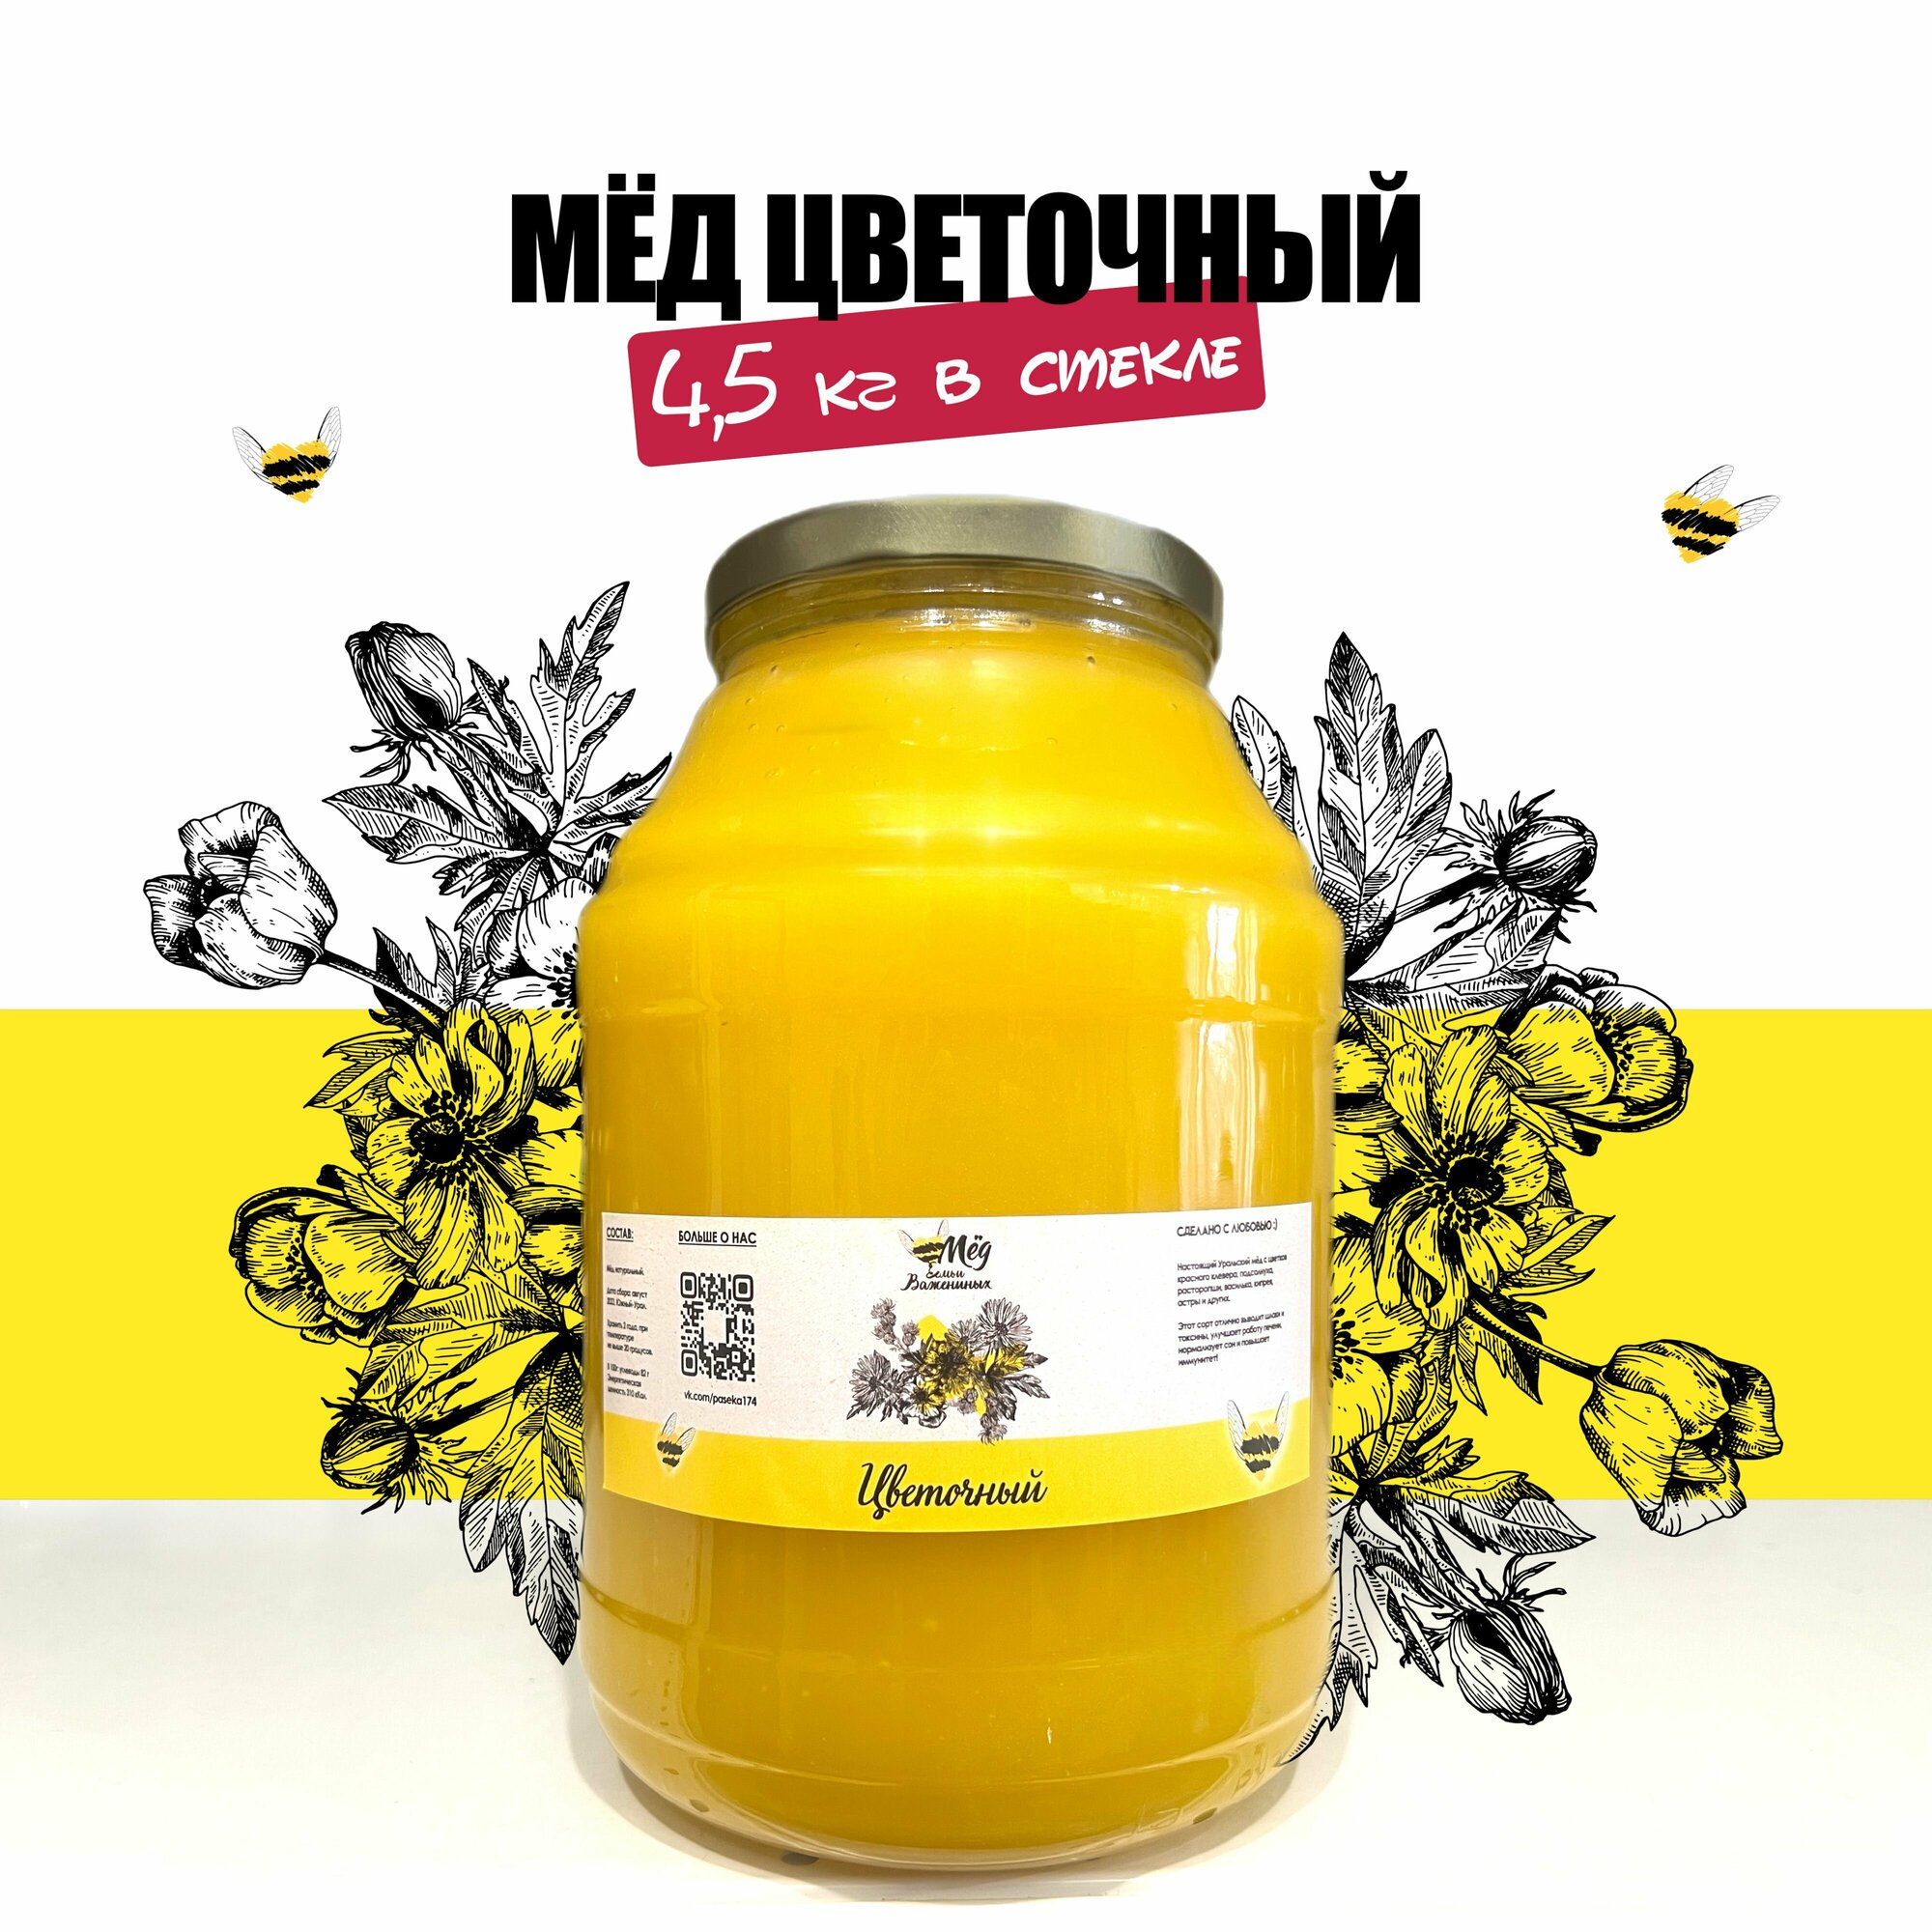 Мед натуральный цветочный, 3 литра в стекле, 4,5 кг мёда, сбор 2023 башкирский, полезные пп сладости, без сахара,